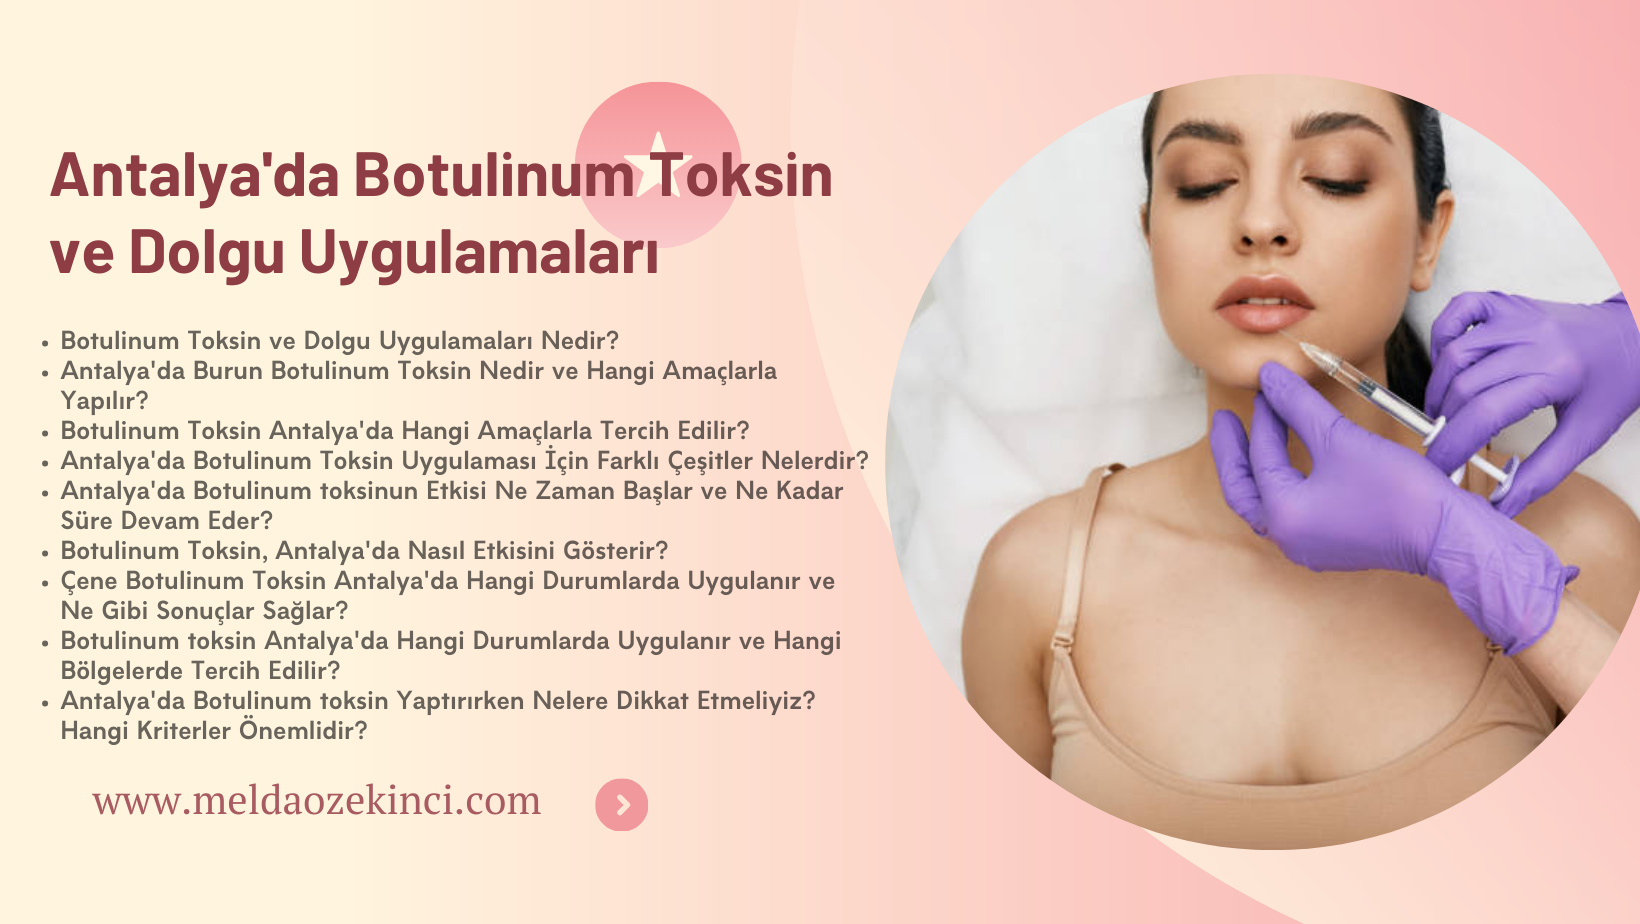 Antalya'da Botulinum Toksin ve Dolgu Uygulamaları